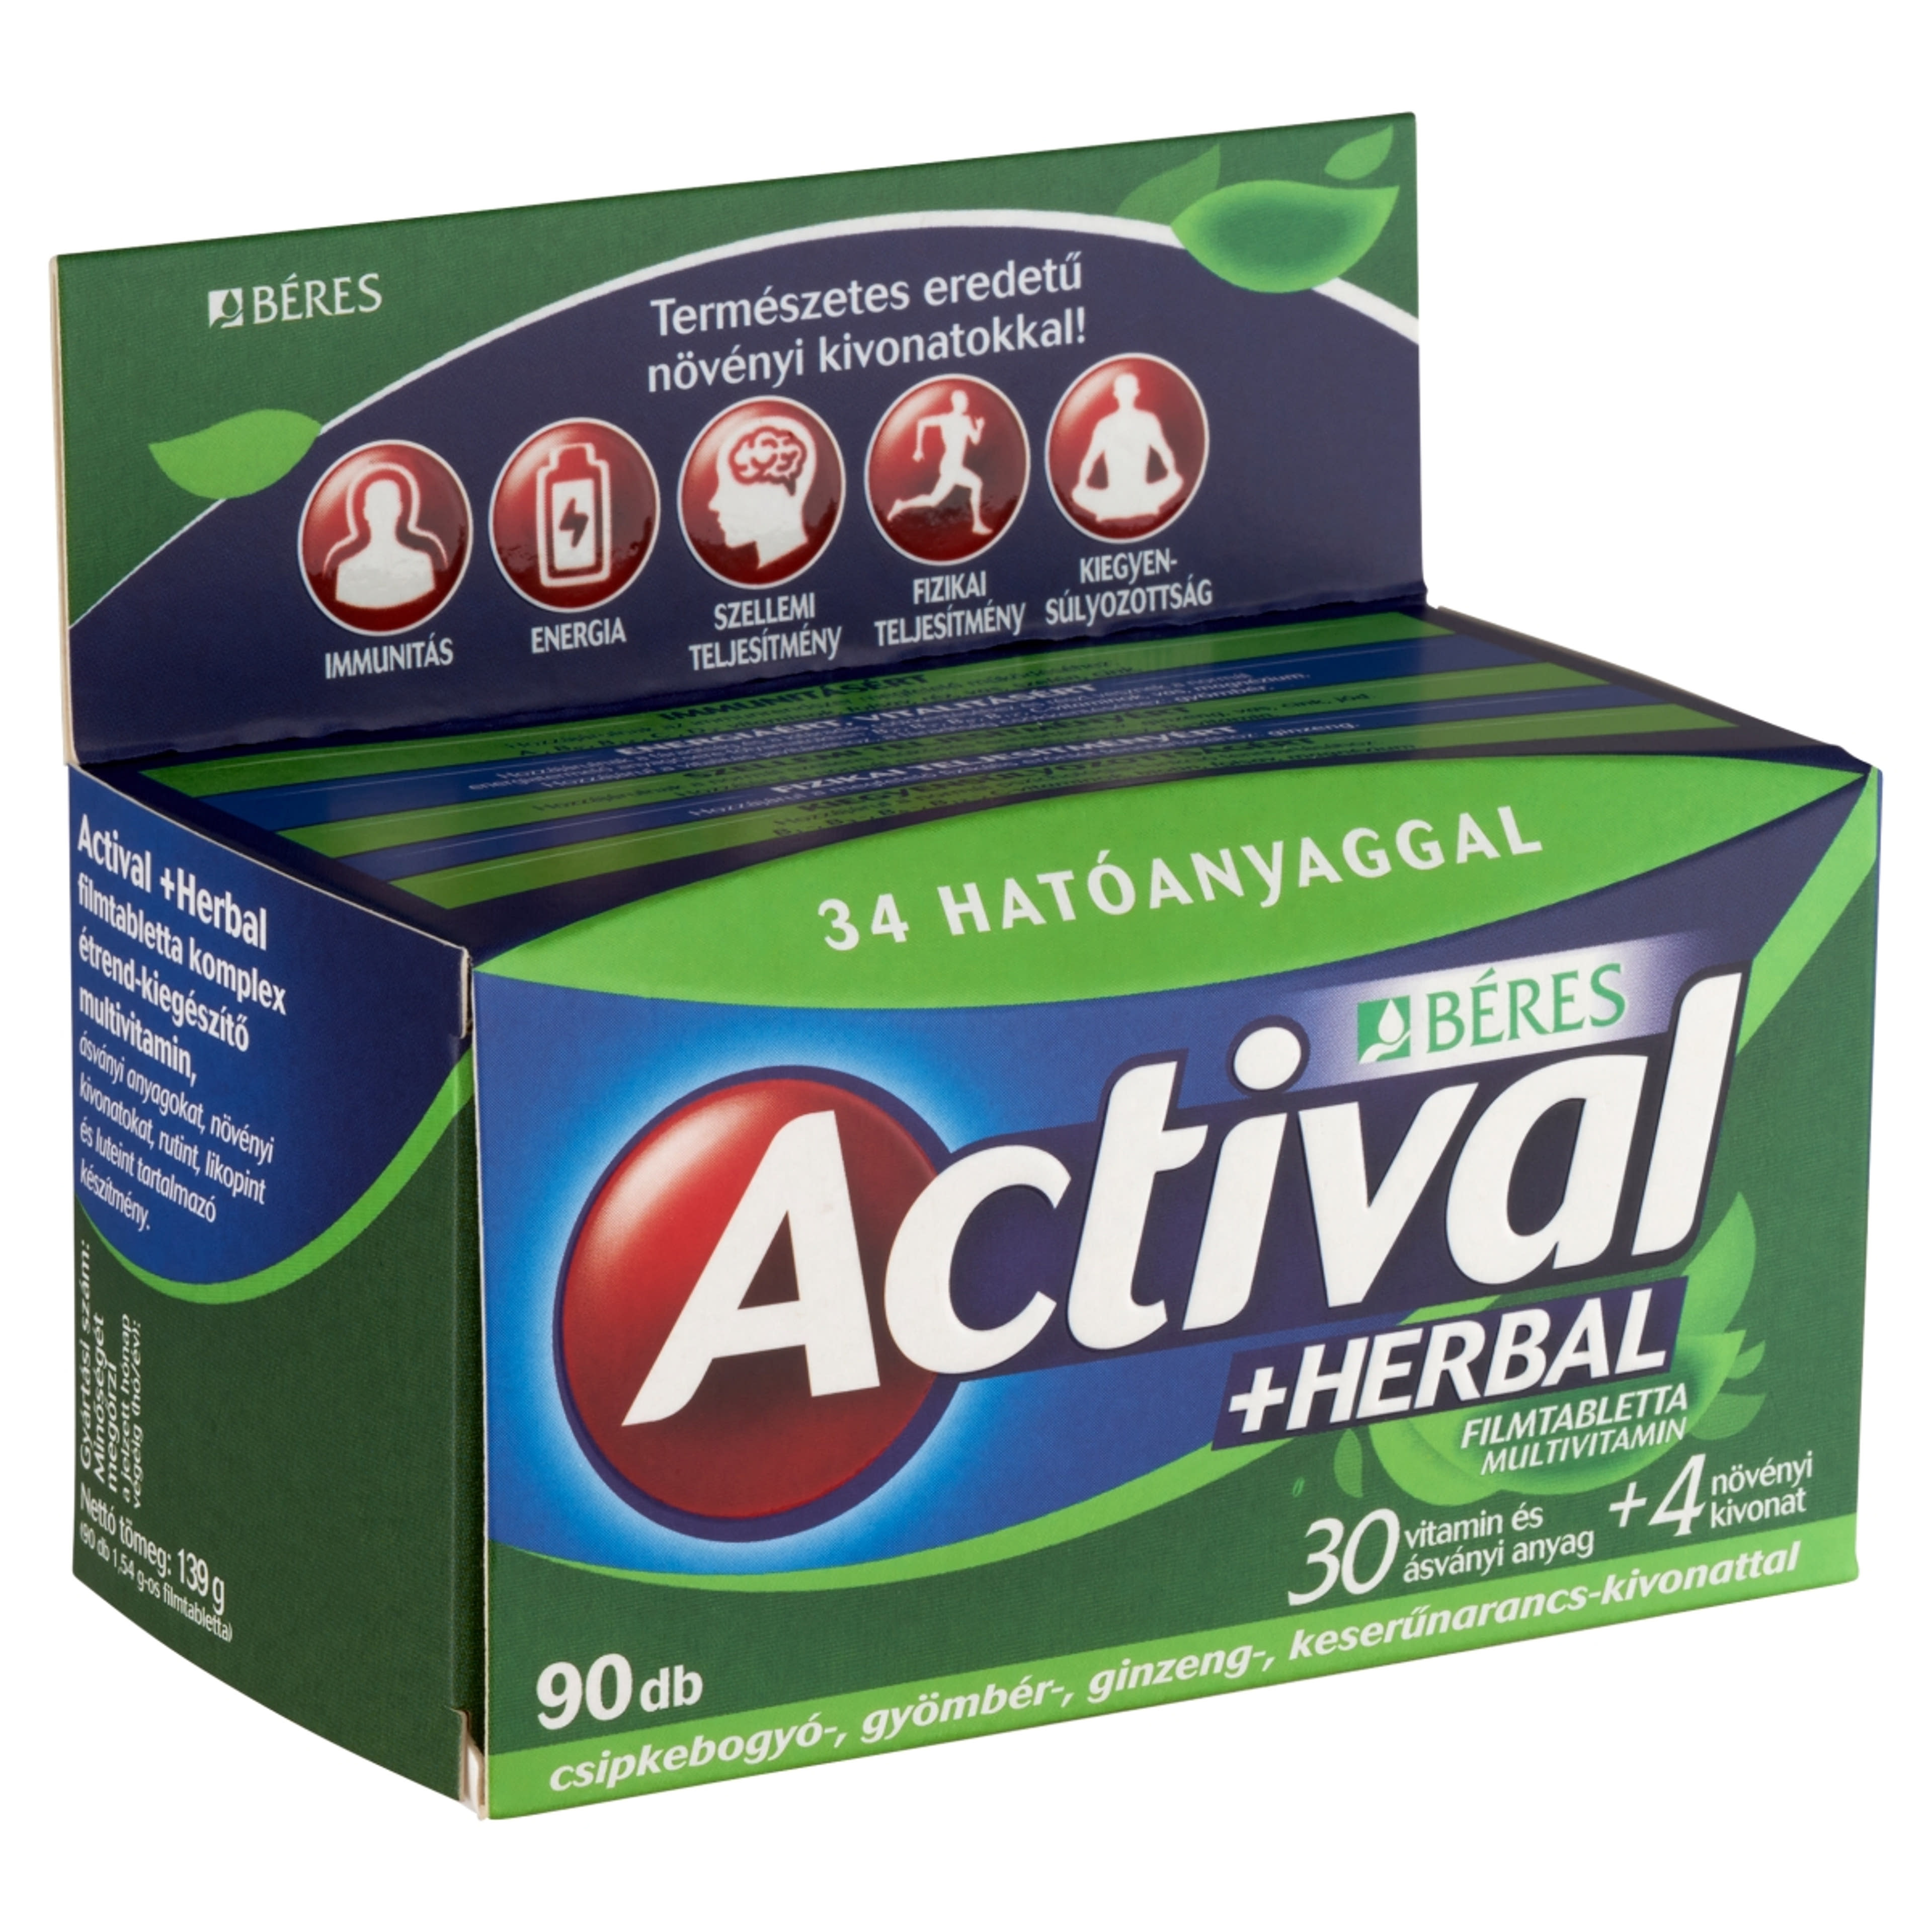 Actival Herbal multivitamin filmtabletta - 90 db-4